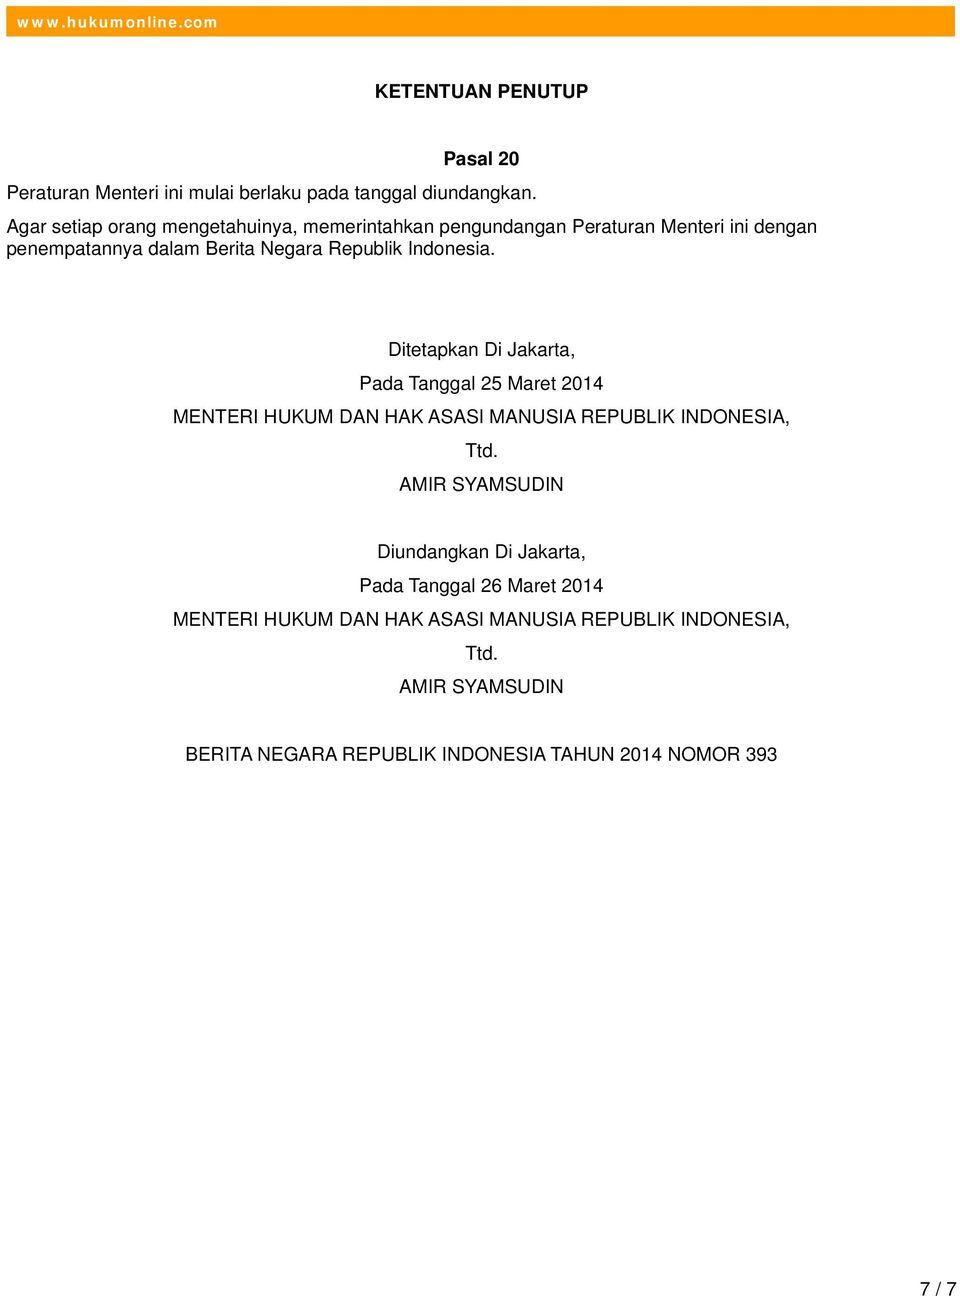 Indonesia. Ditetapkan Di Jakarta, Pada Tanggal 25 Maret 2014 MENTERI HUKUM DAN HAK ASASI MANUSIA REPUBLIK INDONESIA, Ttd.